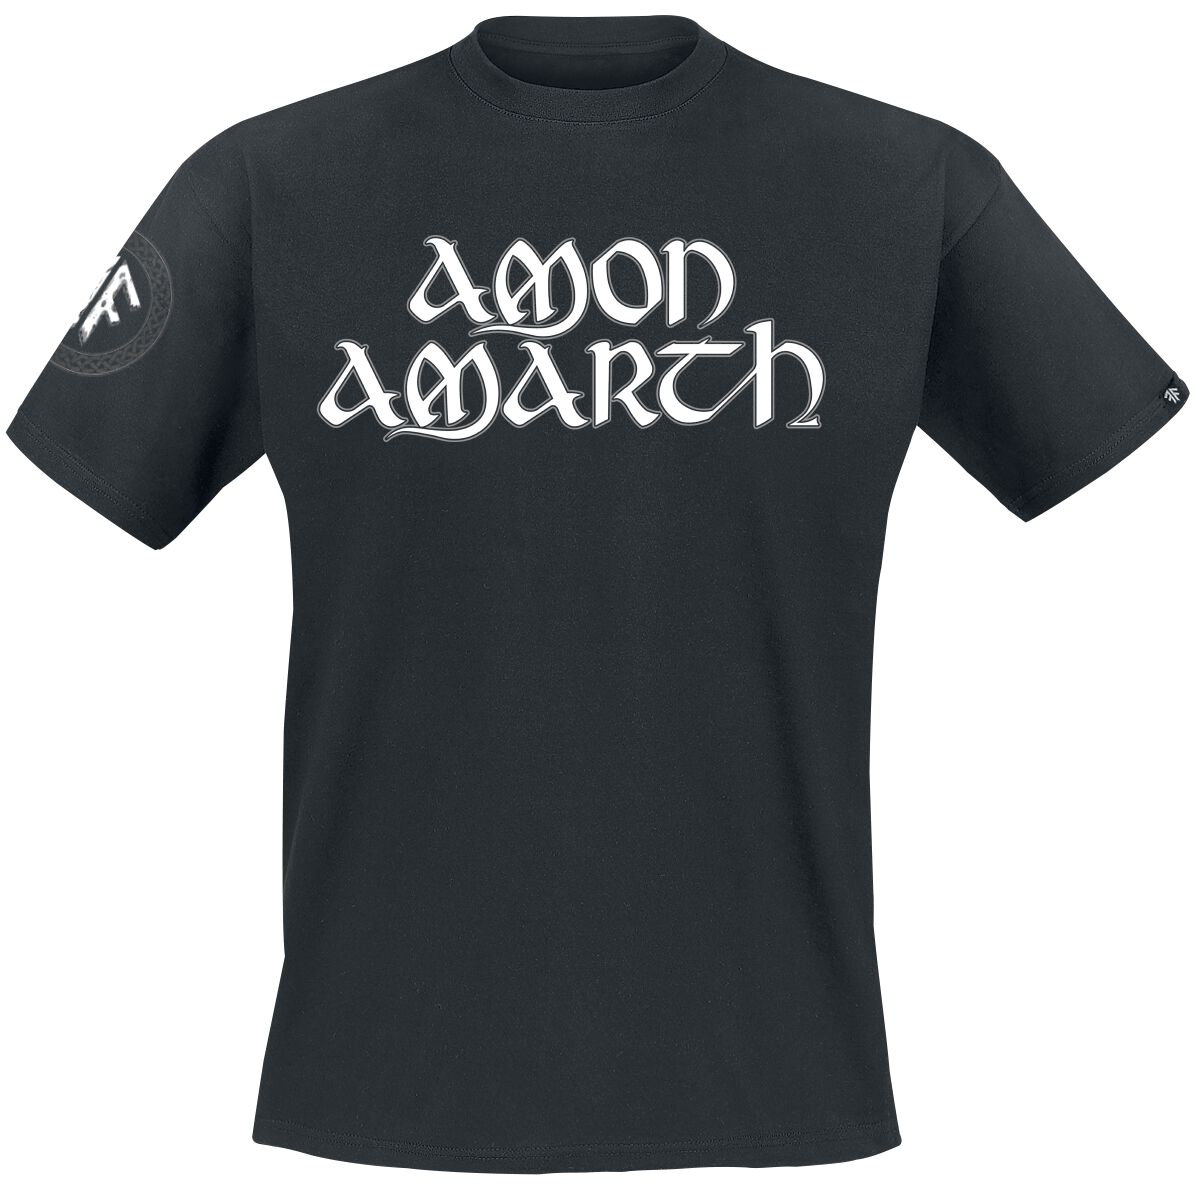 Amon Amarth T-Shirt - Mjoelner - S bis XXL - für Männer - Größe M - schwarz  - EMP exklusives Merchandise!